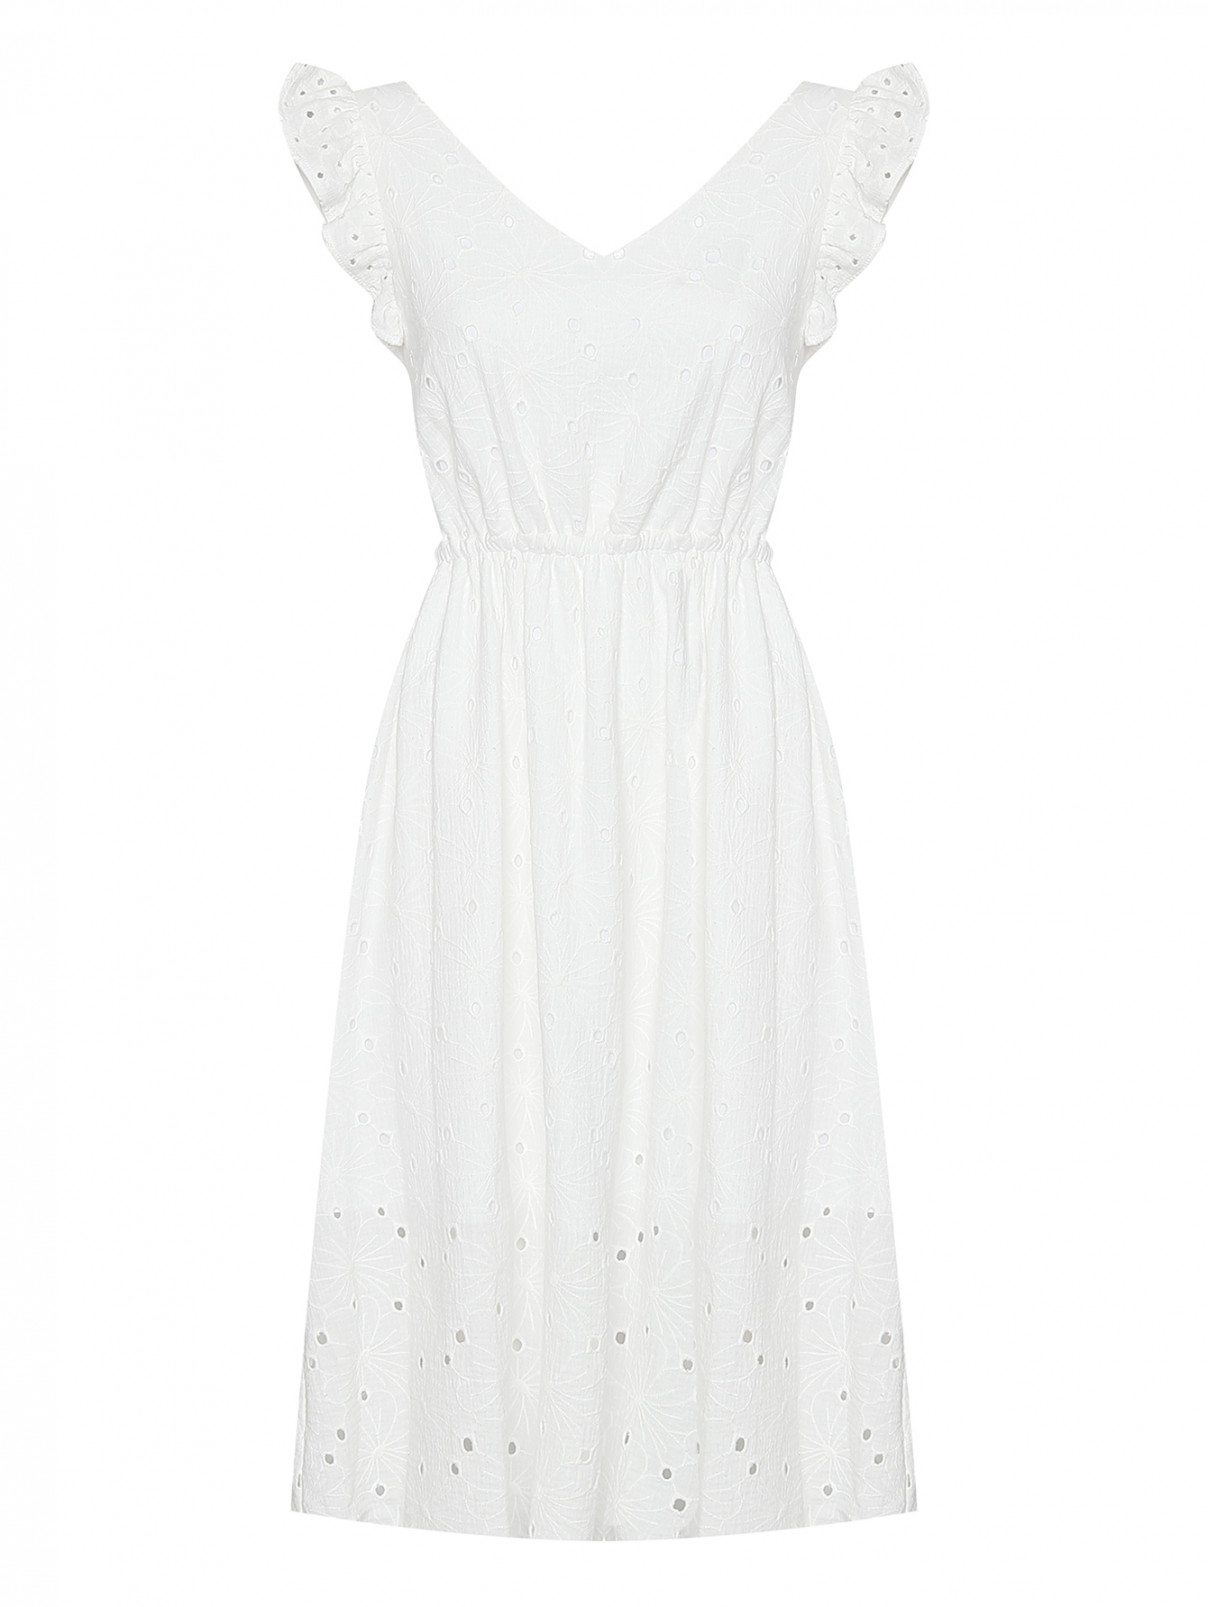 Платье из хлопка с вышивкой ришелье Paul Smith  –  Общий вид  – Цвет:  Белый